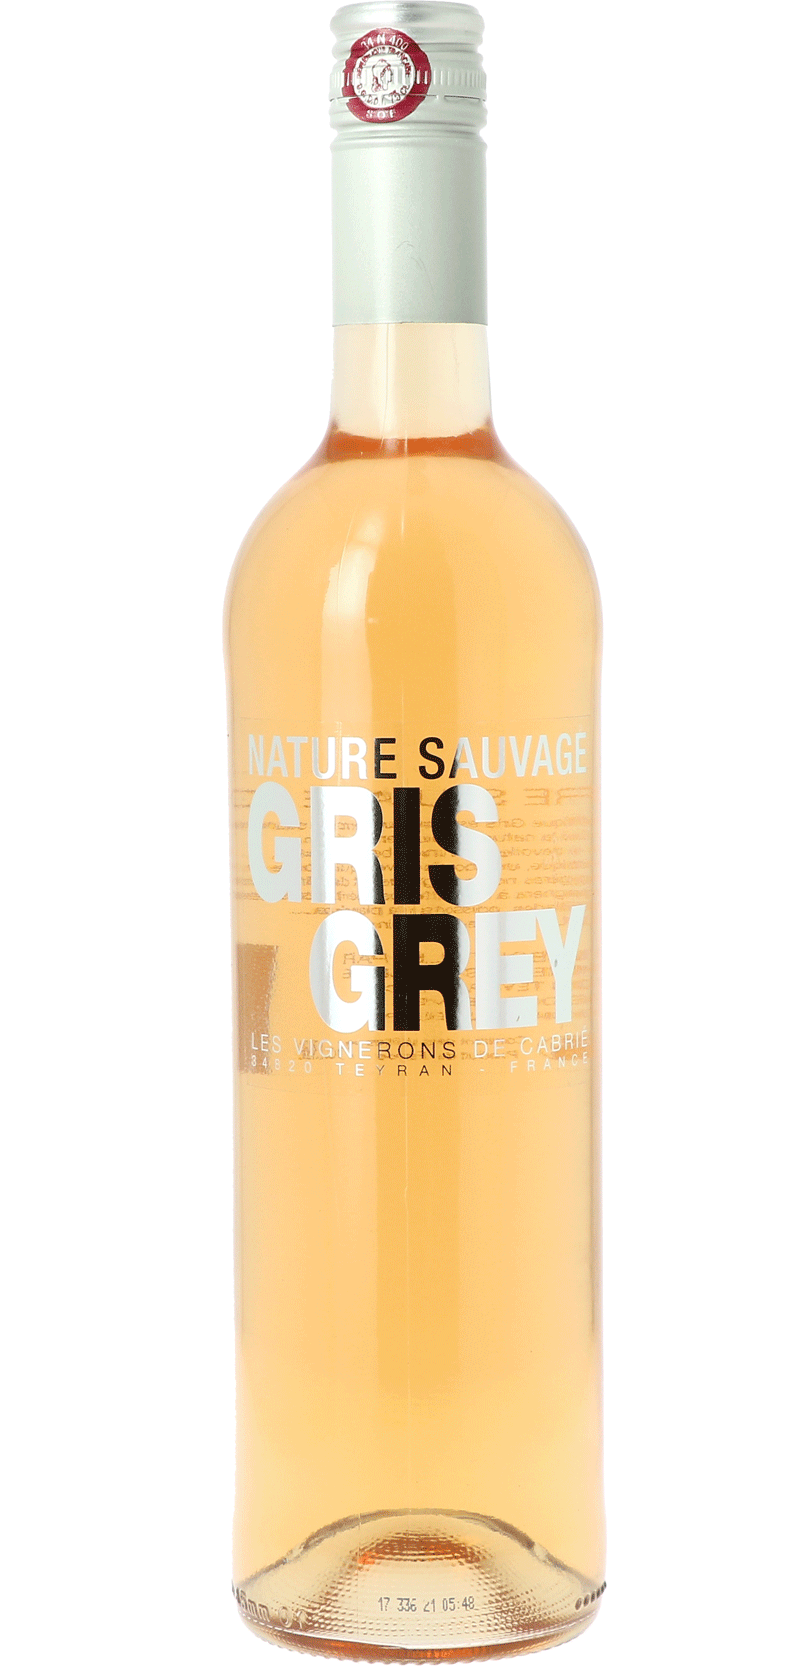 Nature Sauvage Gris Grey Les Vignerons de Cabrié - Rosé wijn 